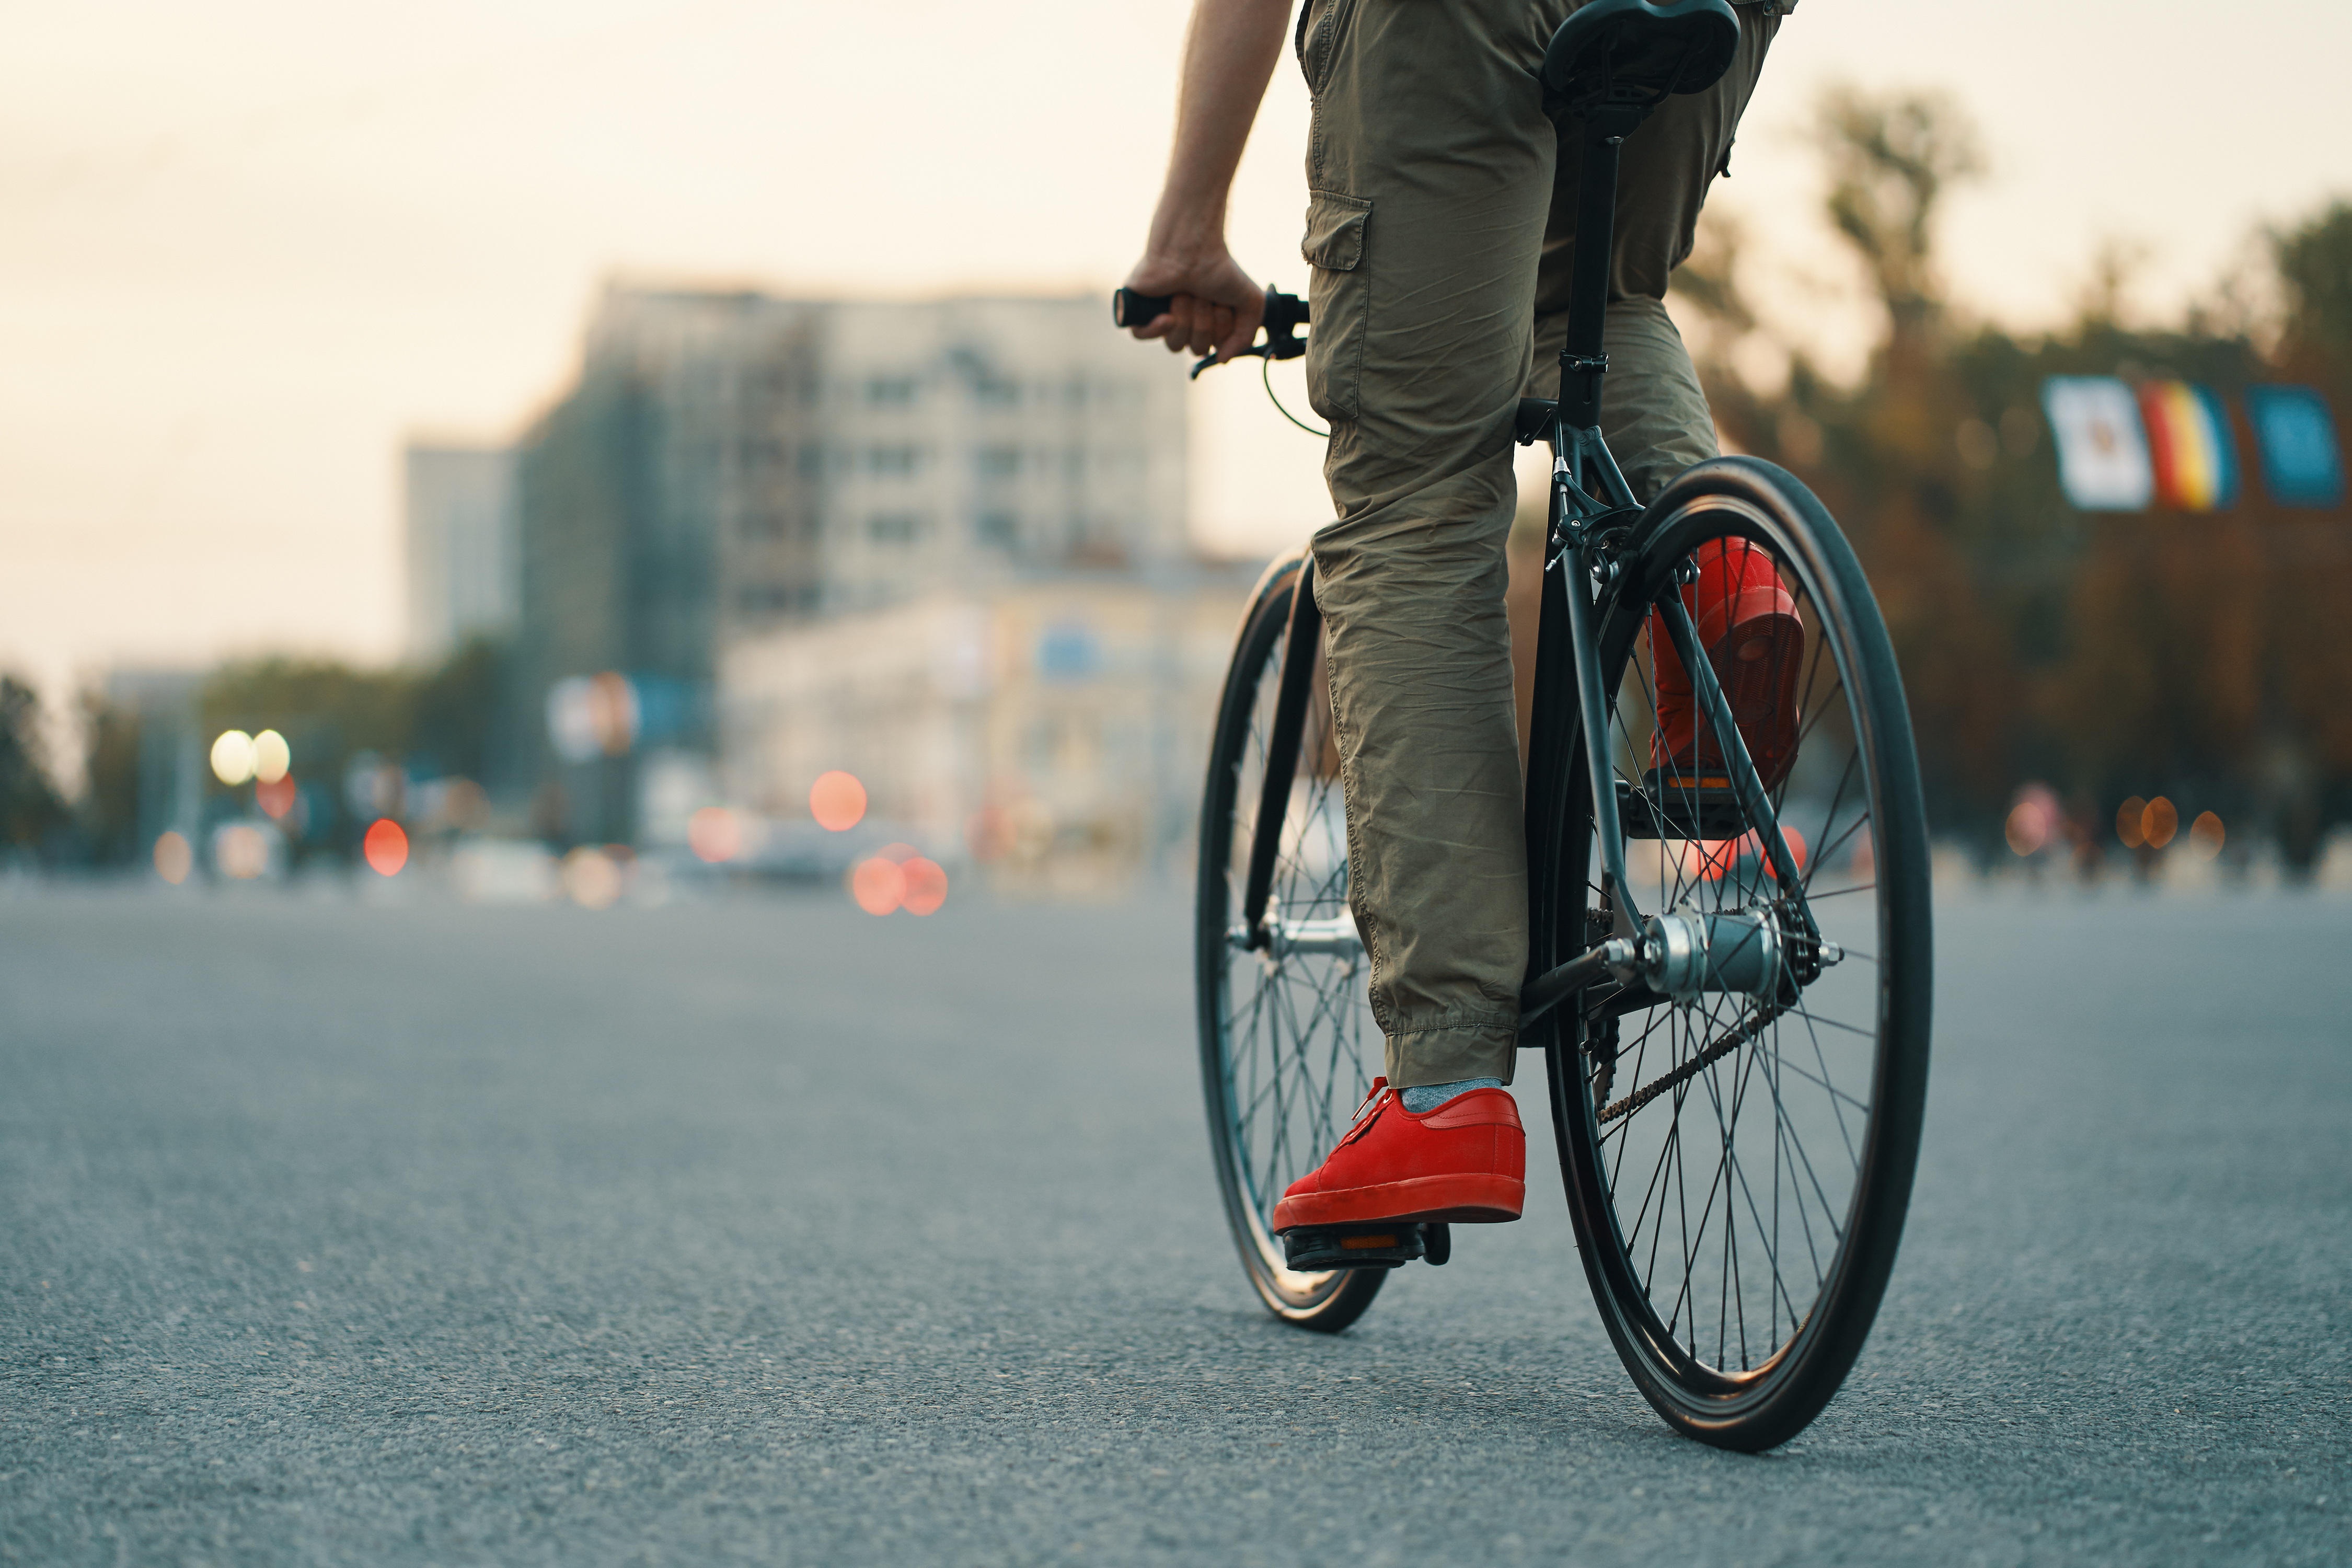 Consumo de bicicletas aumentou 118% no último ano: Veja os benefícios de usar uma bike no seu dia a dia.